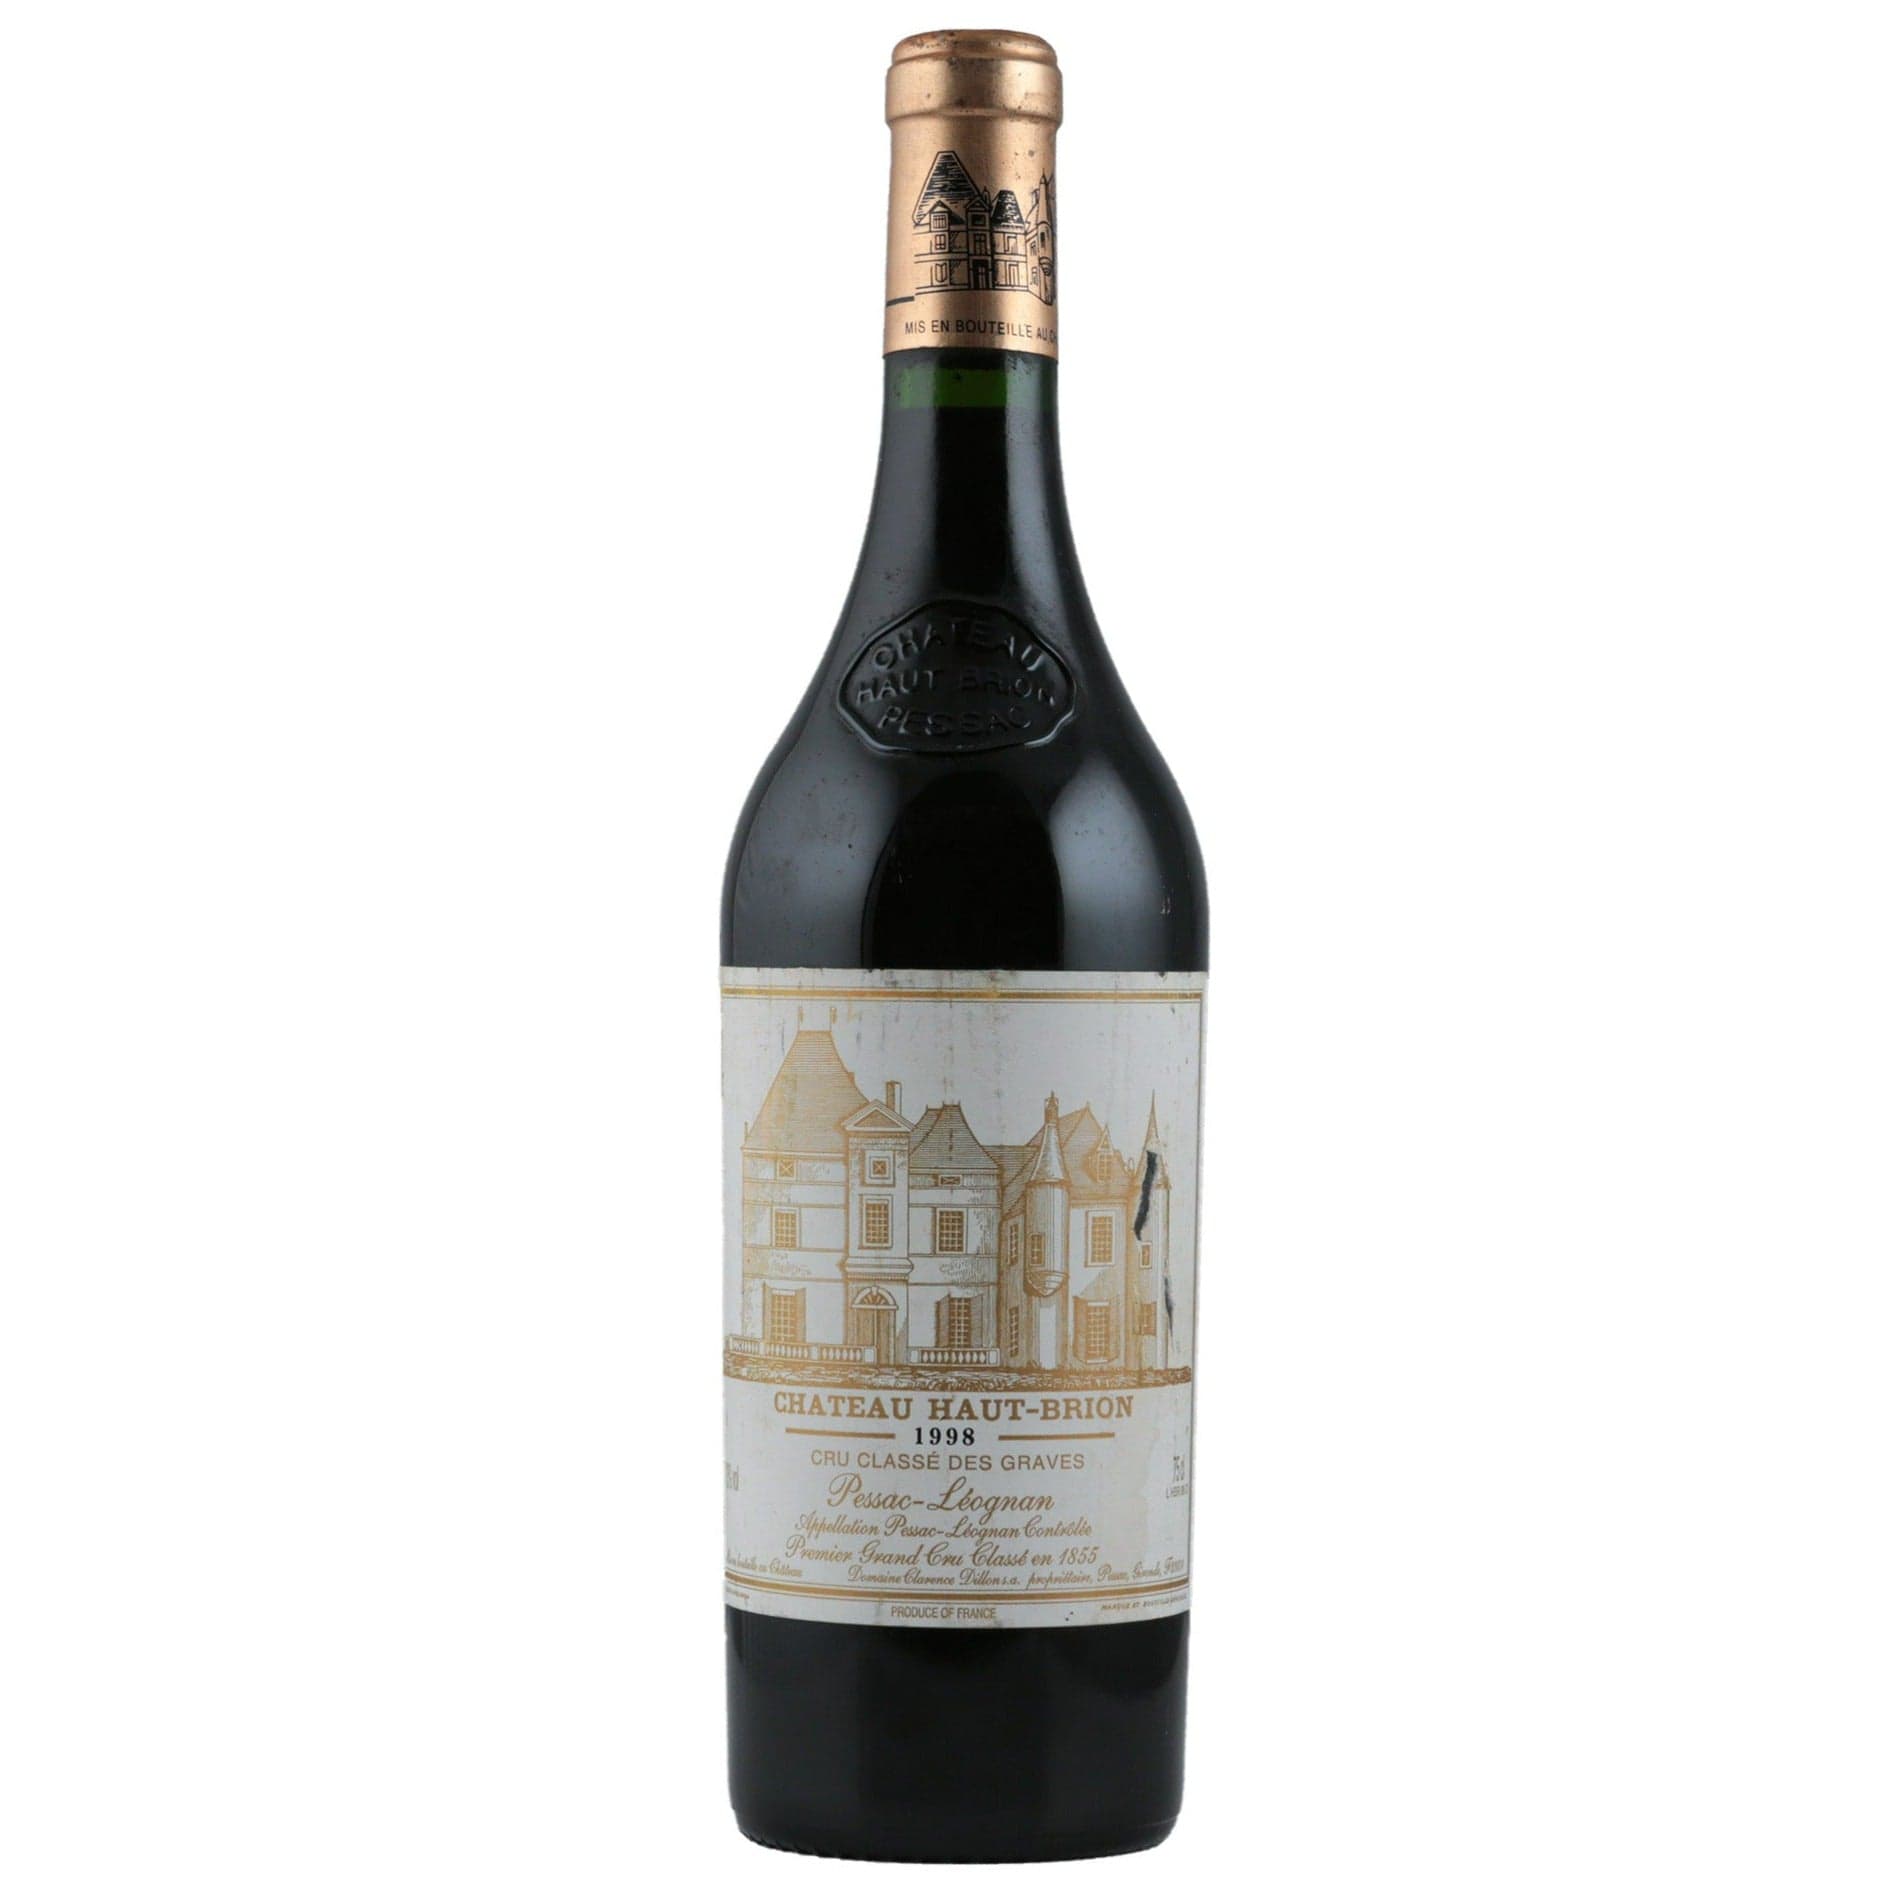 Single bottle of Red wine Ch. Haut Brion, 1st Growth Grand Cru Classe, Pessac-Leognan, 1998 59% Merlot, 29% Cabernet Sauvignon & 12% Cabernet Franc